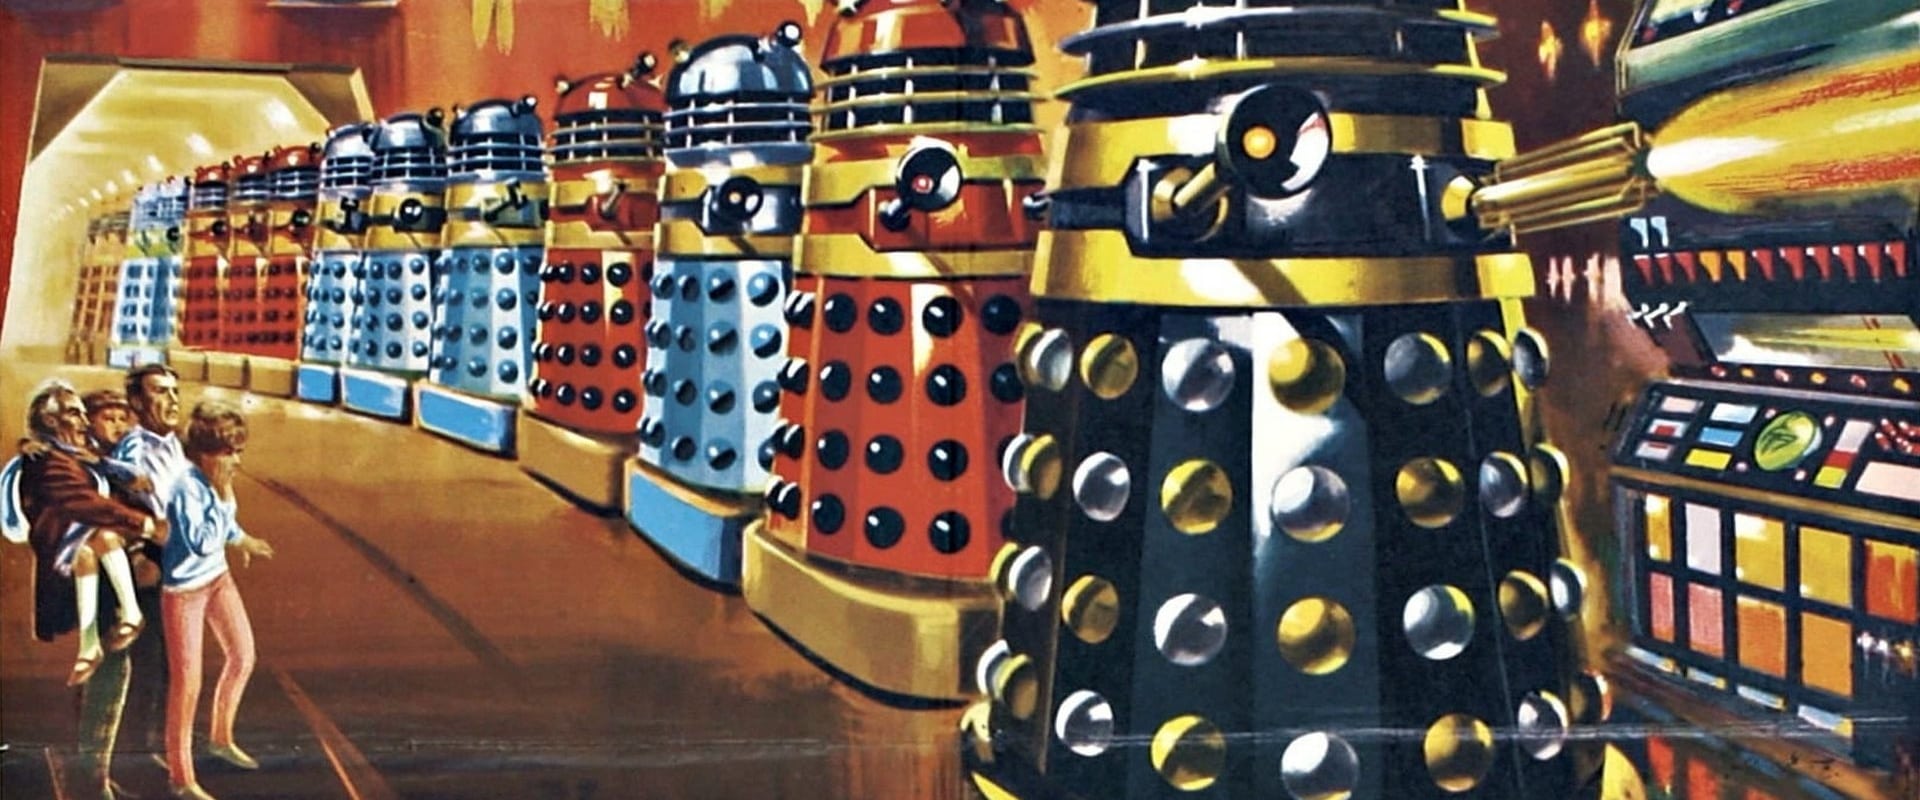 Dr. Who et les Daleks